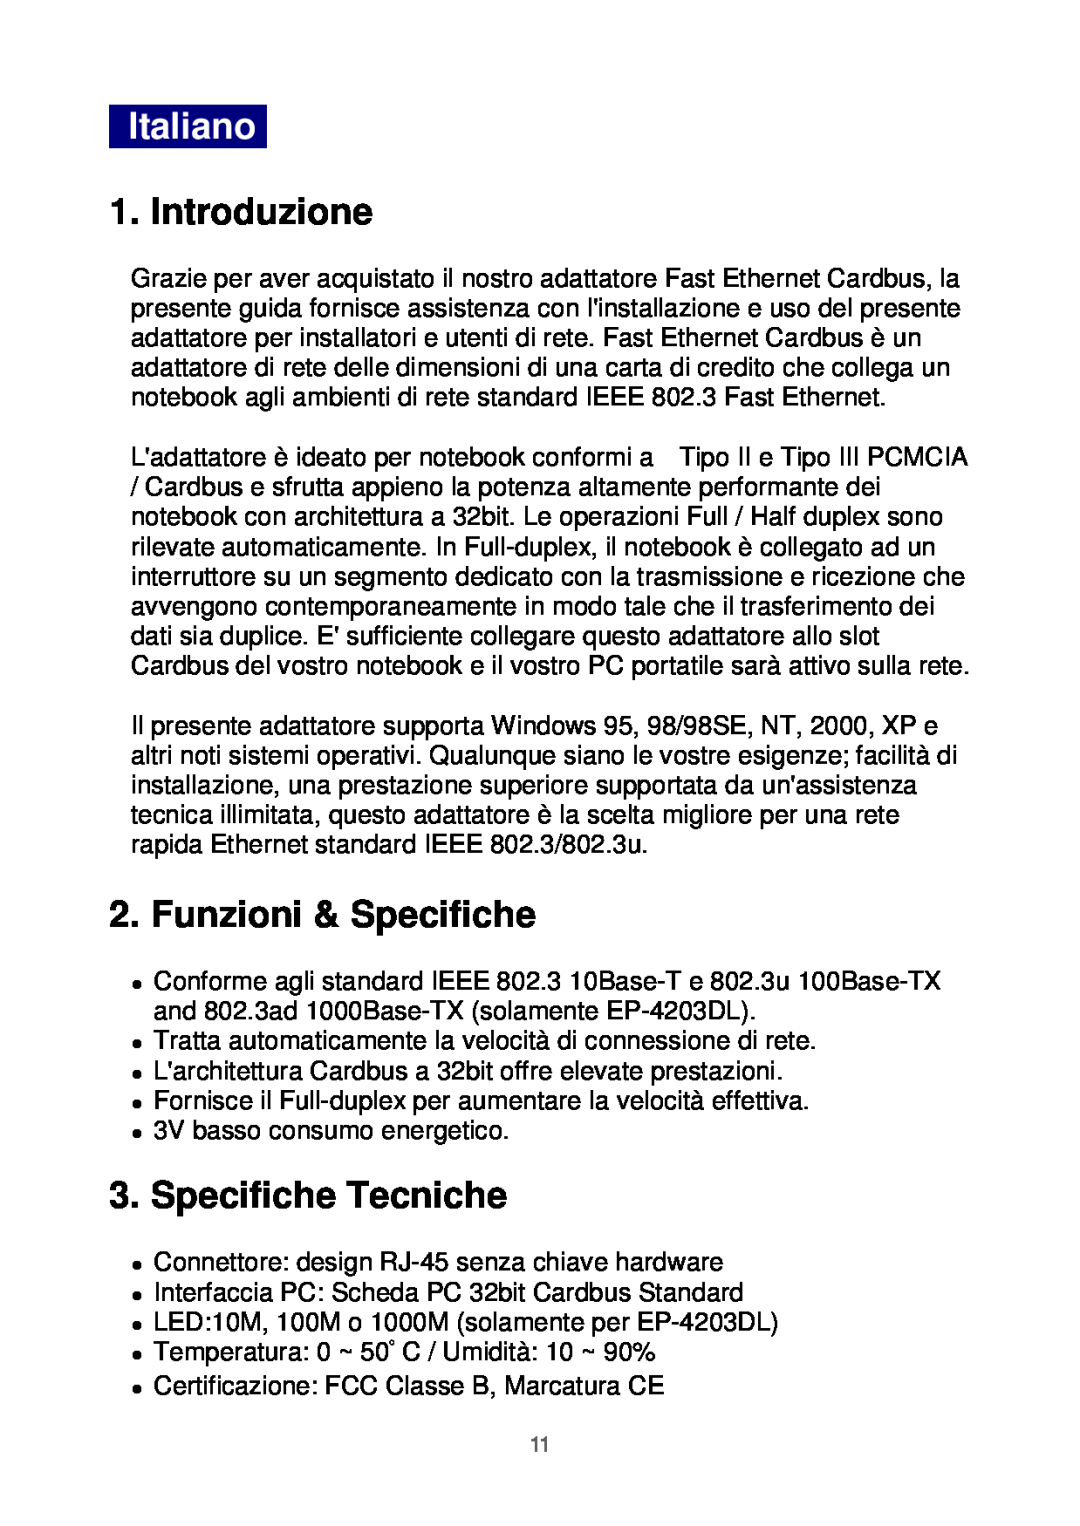 Edimax Technology Ethernet Cardbus Adapter manual Italiano, Introduzione, Funzioni & Specifiche, Specifiche Tecniche 